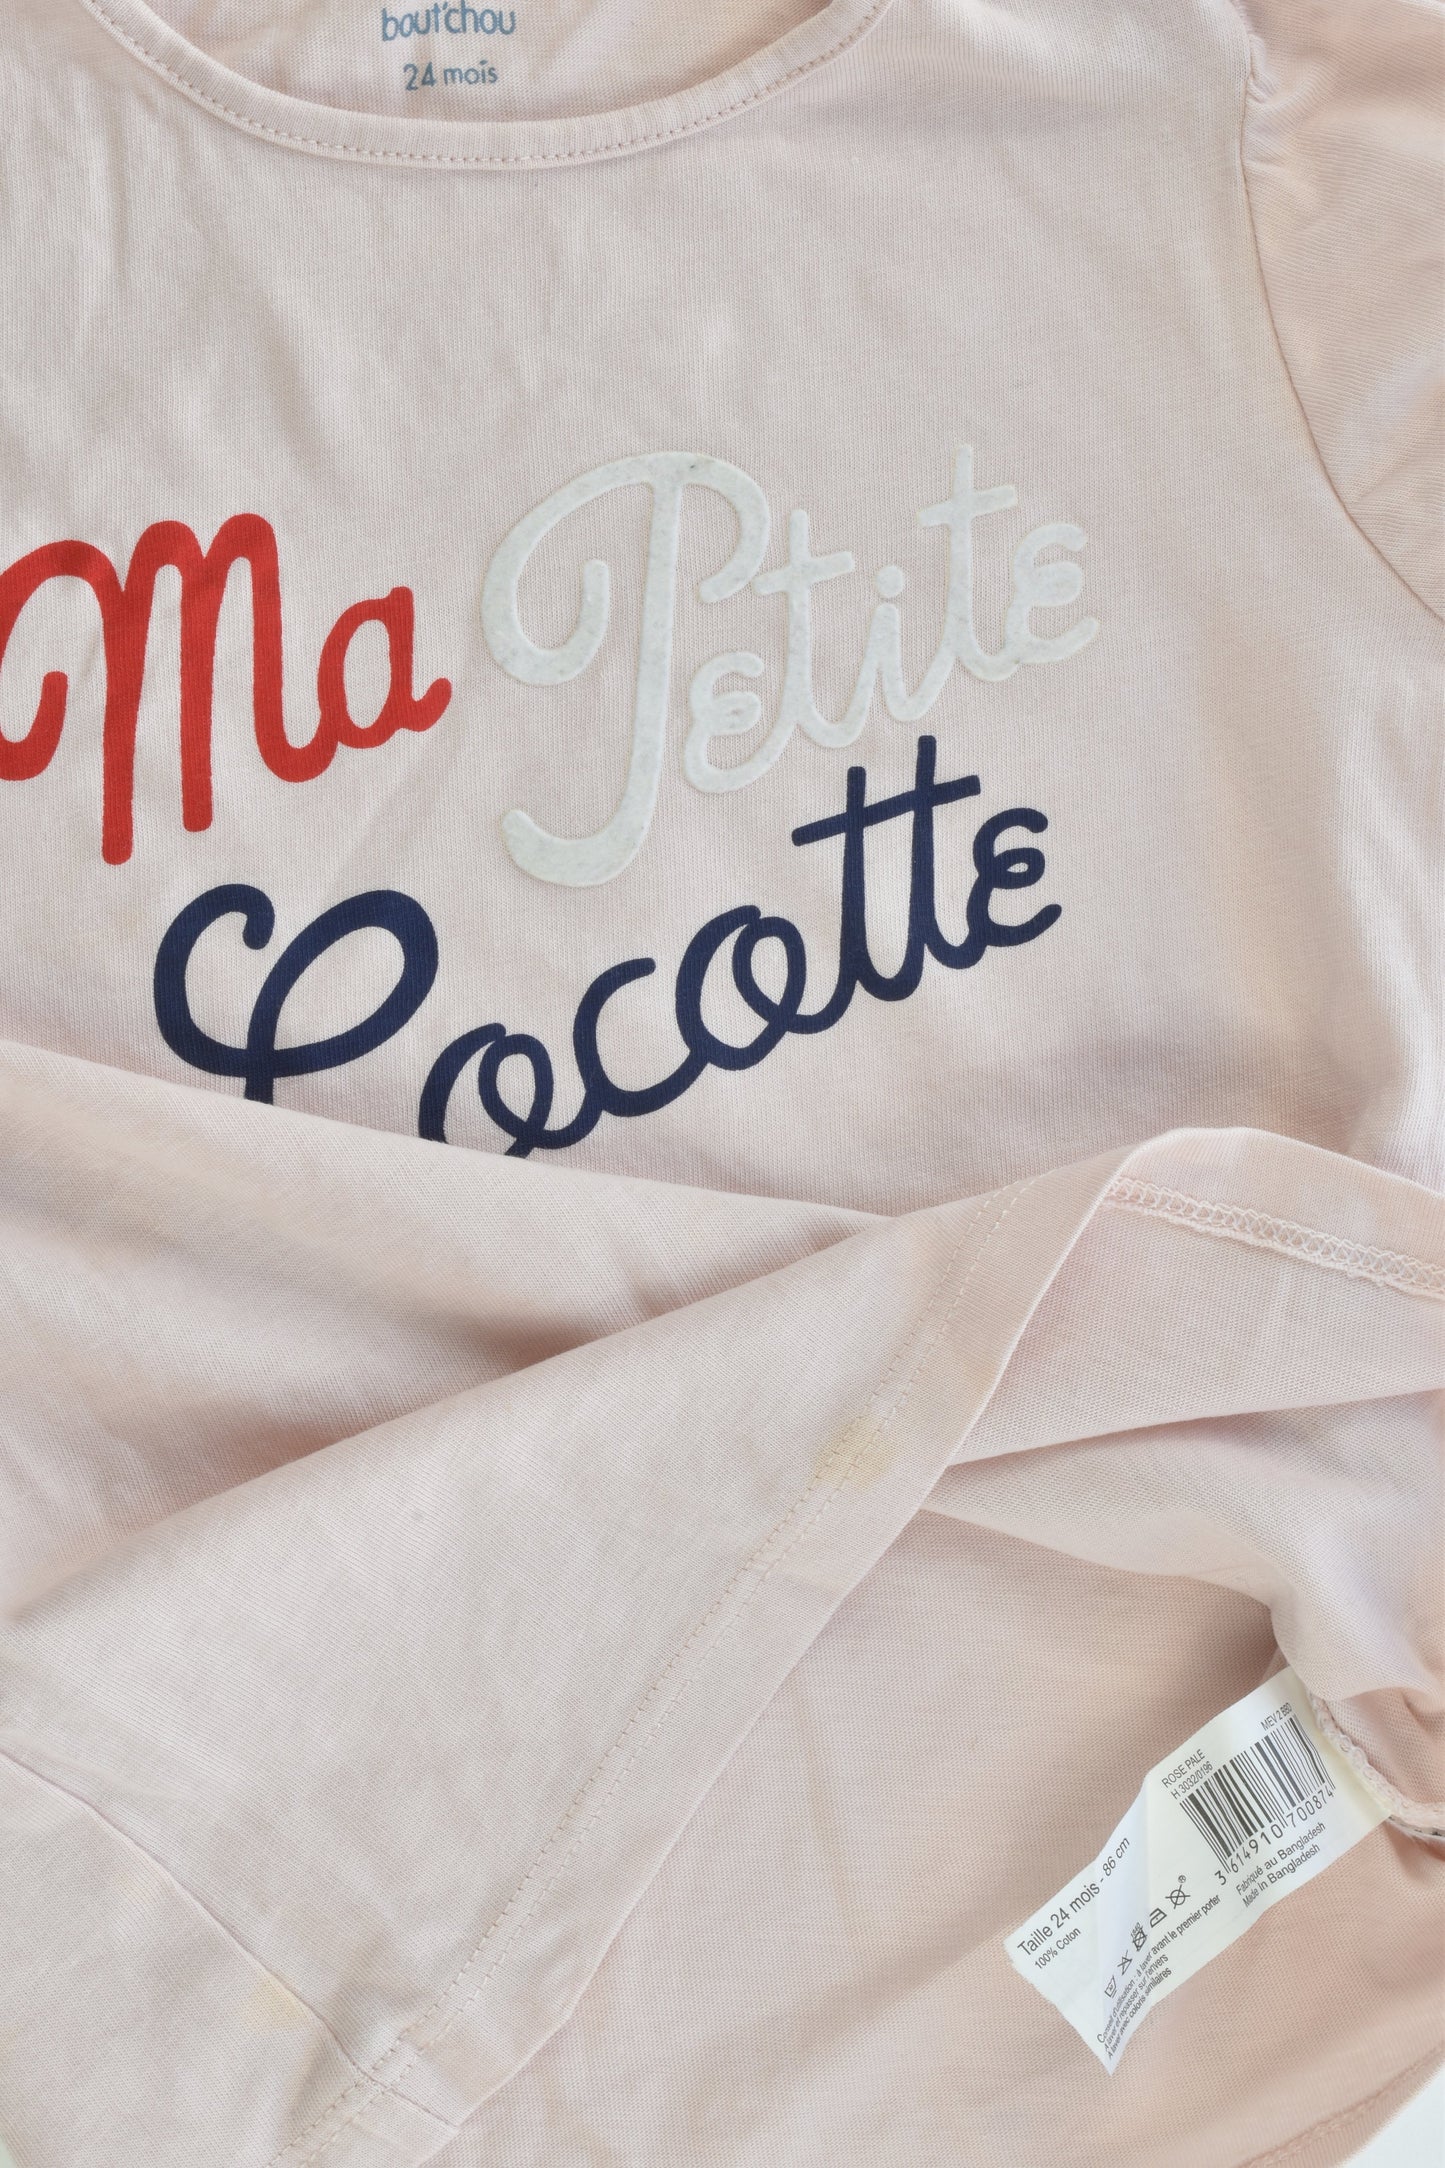 Bout'chou (France) Size 24 months (86 cm) "Ma Petite Cocotte" T-shirt